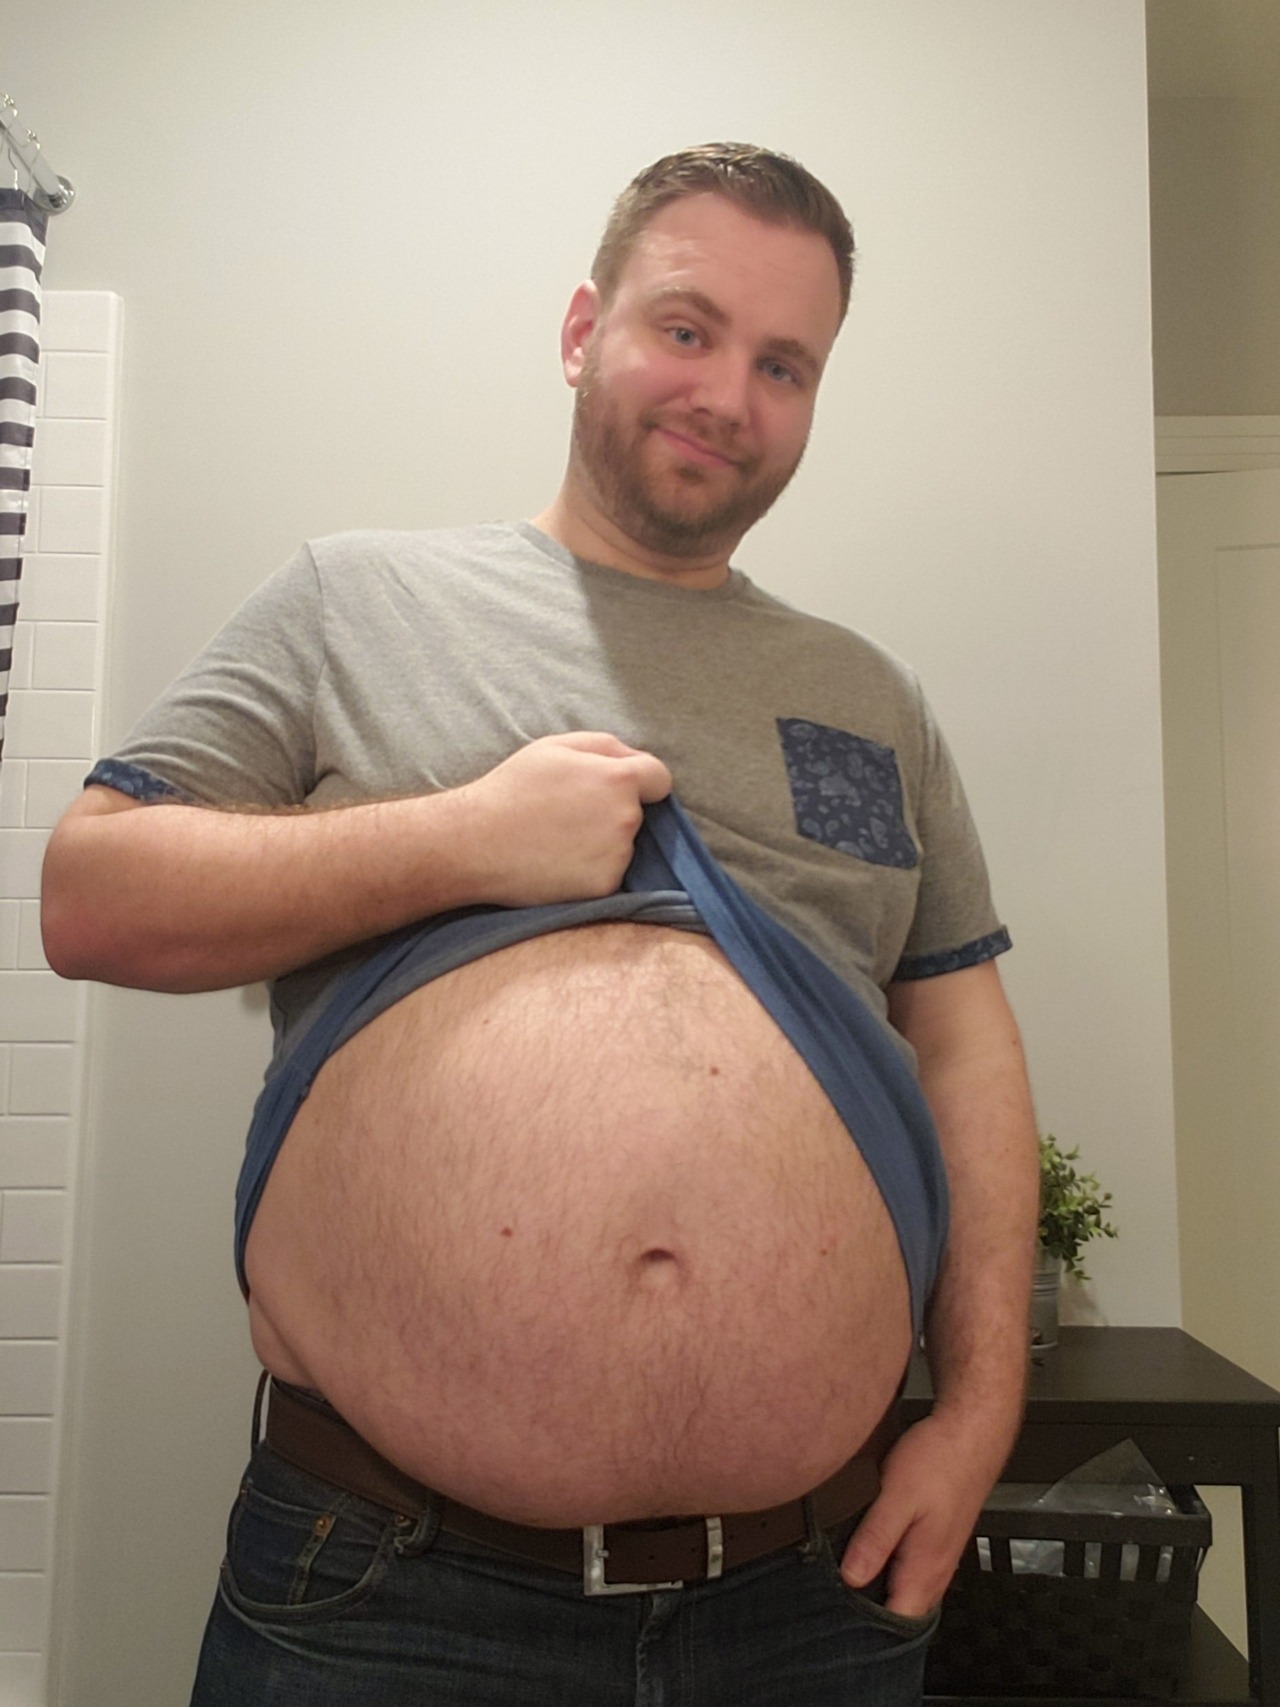 Round belly